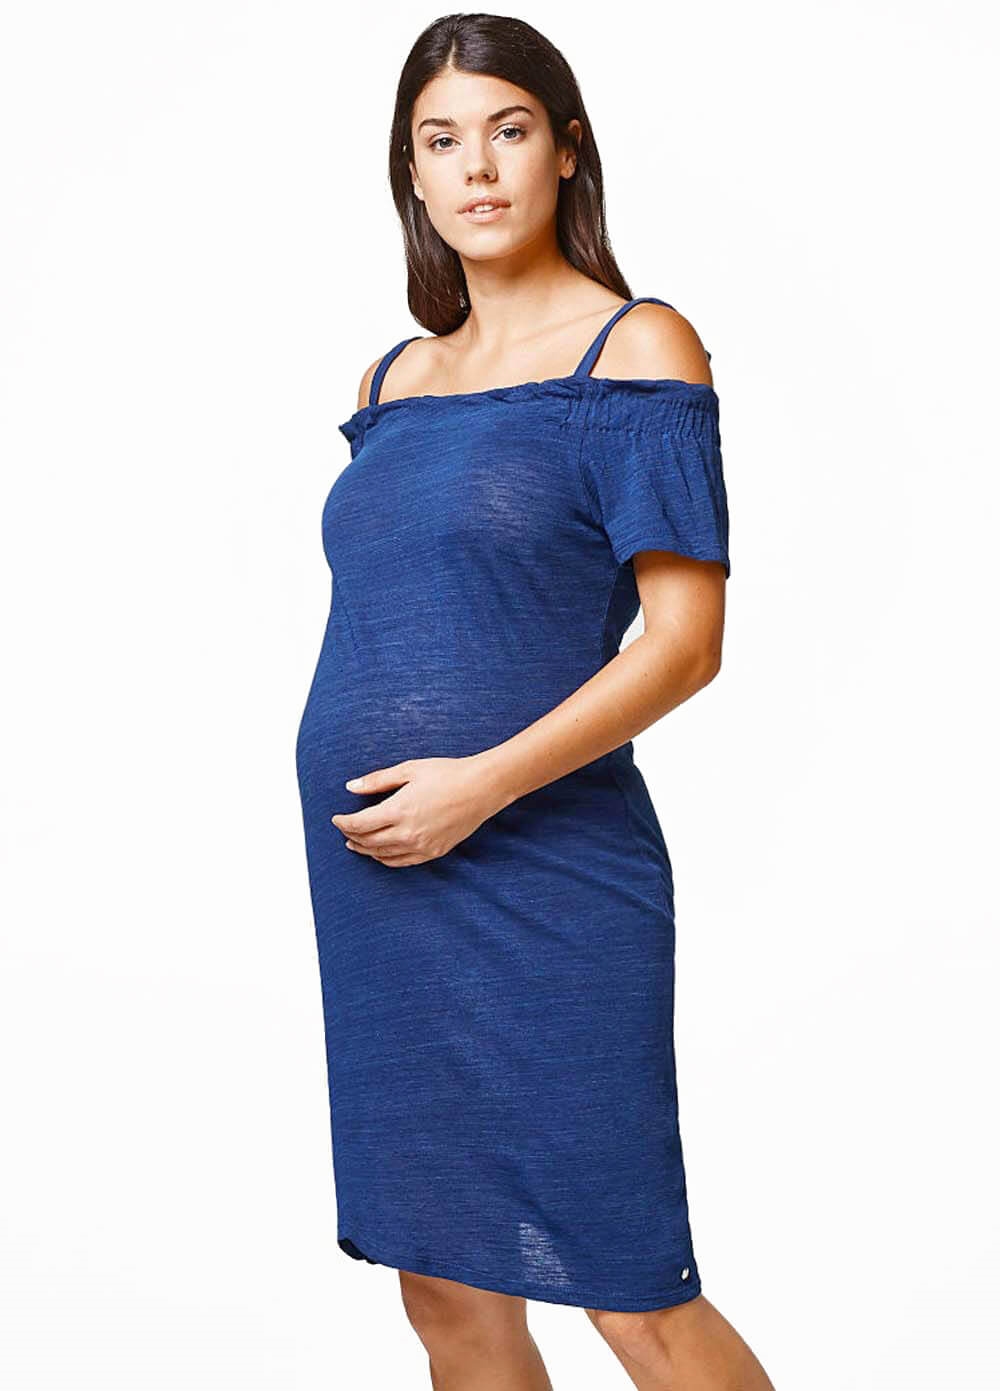 Esprit - Azure Blue Off Shoulder Dress